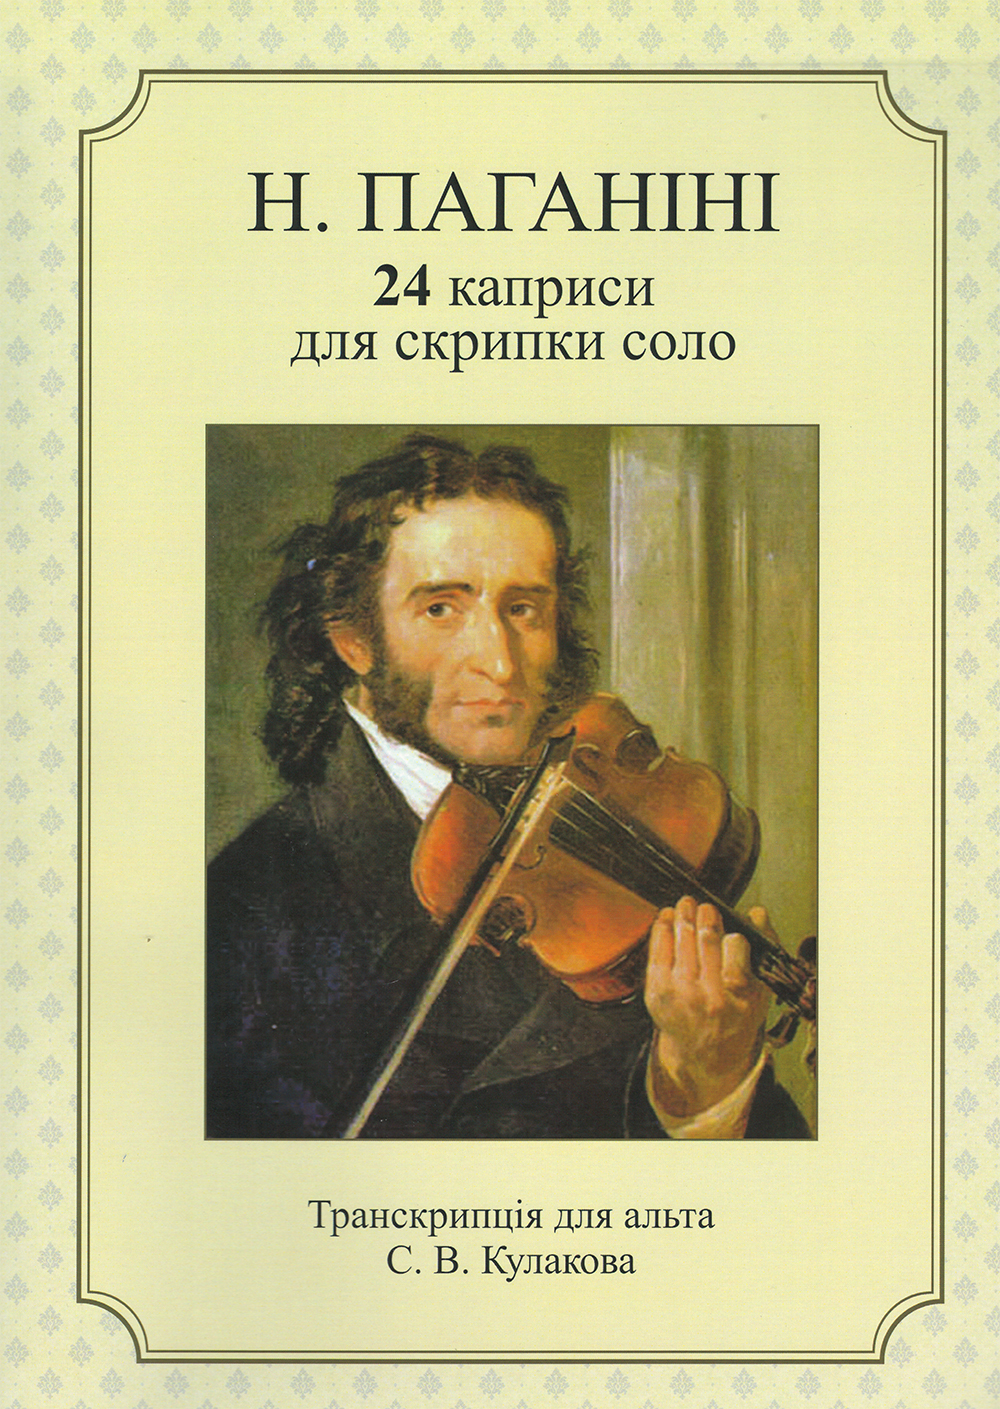 Н. Паганіні 24 каприси для скрипки соло (перекл. для альта)